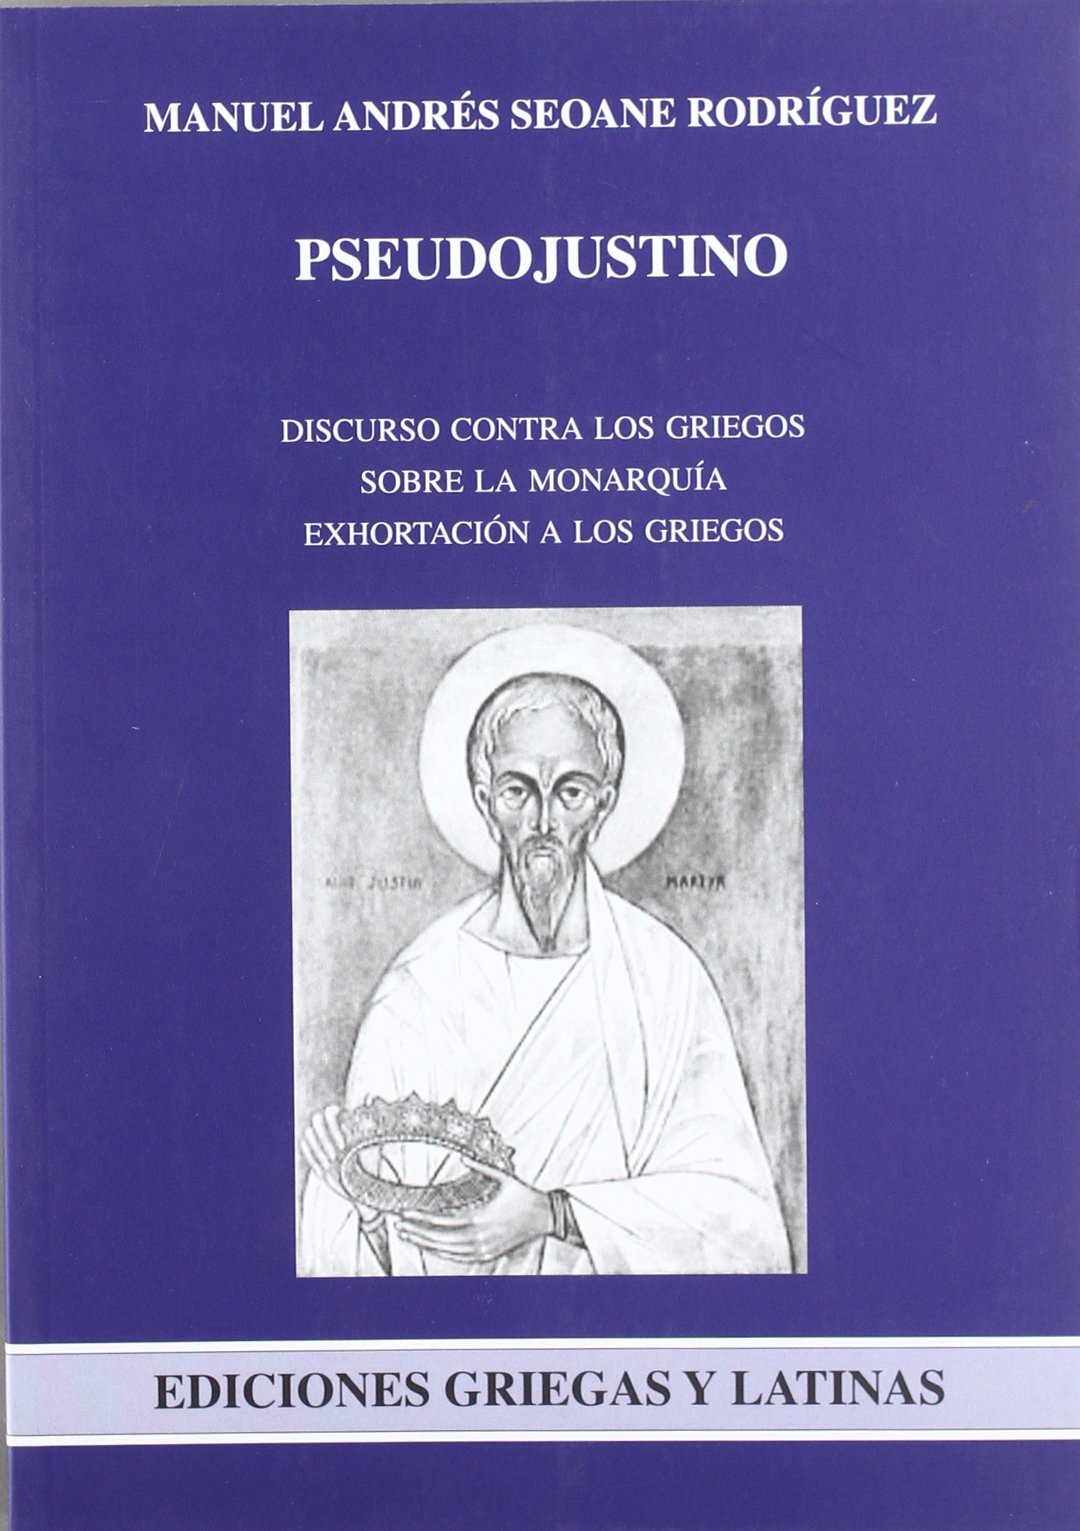 Imagen de portada del libro Pseudojustino